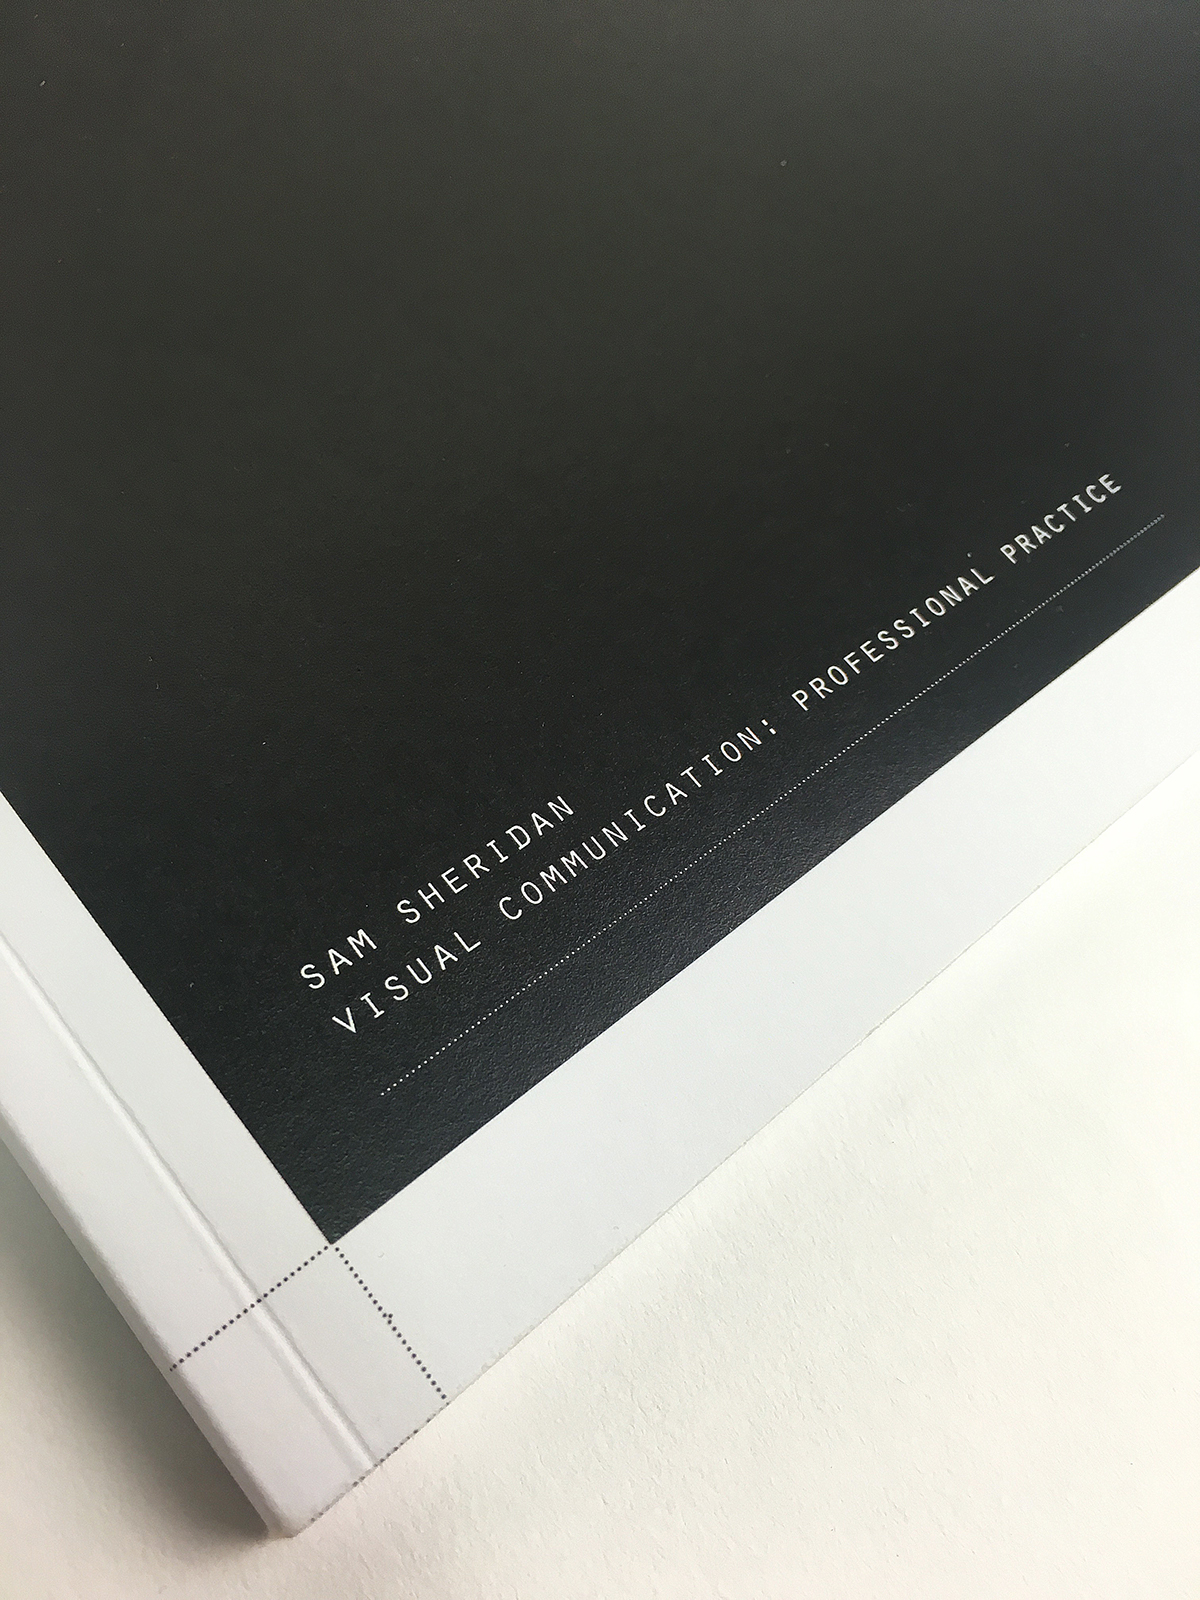 Logo Design book design identity design black and white b&w editorial print